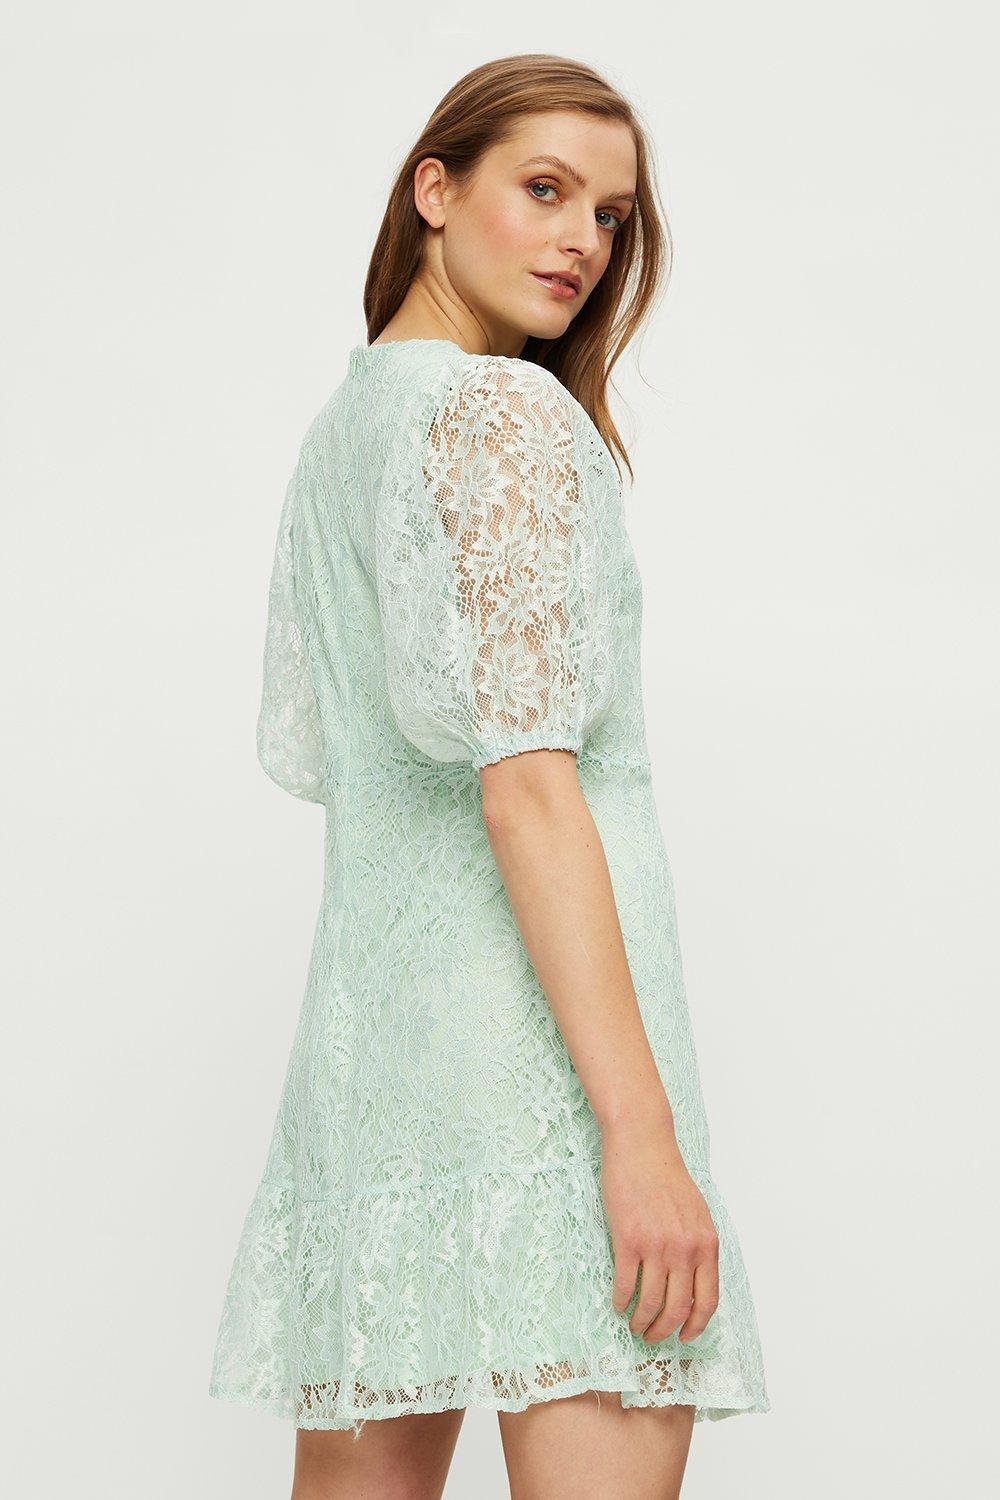 Dorothy Perkins Mint Lace Mini Dress